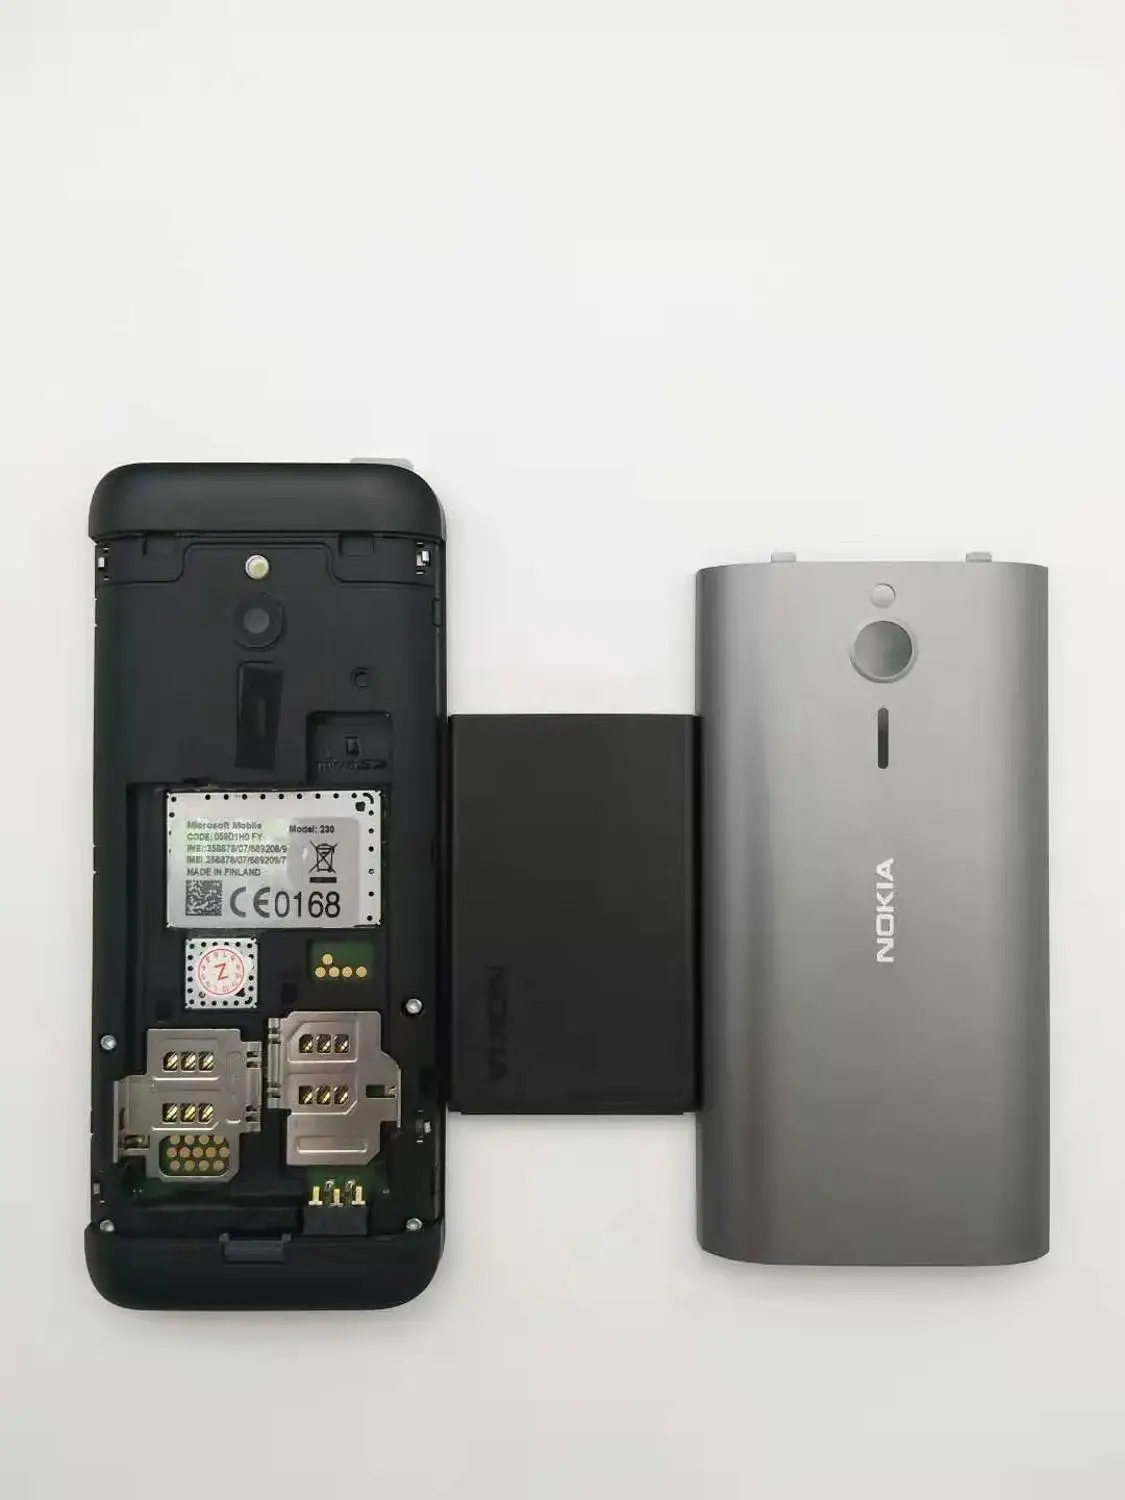 230 Nokia 230 разблокированный GSM 2,8 дюймов две sim-карты и одна карта 2MP QWERTY клавиатура английский Восстановленный мобильный телефон